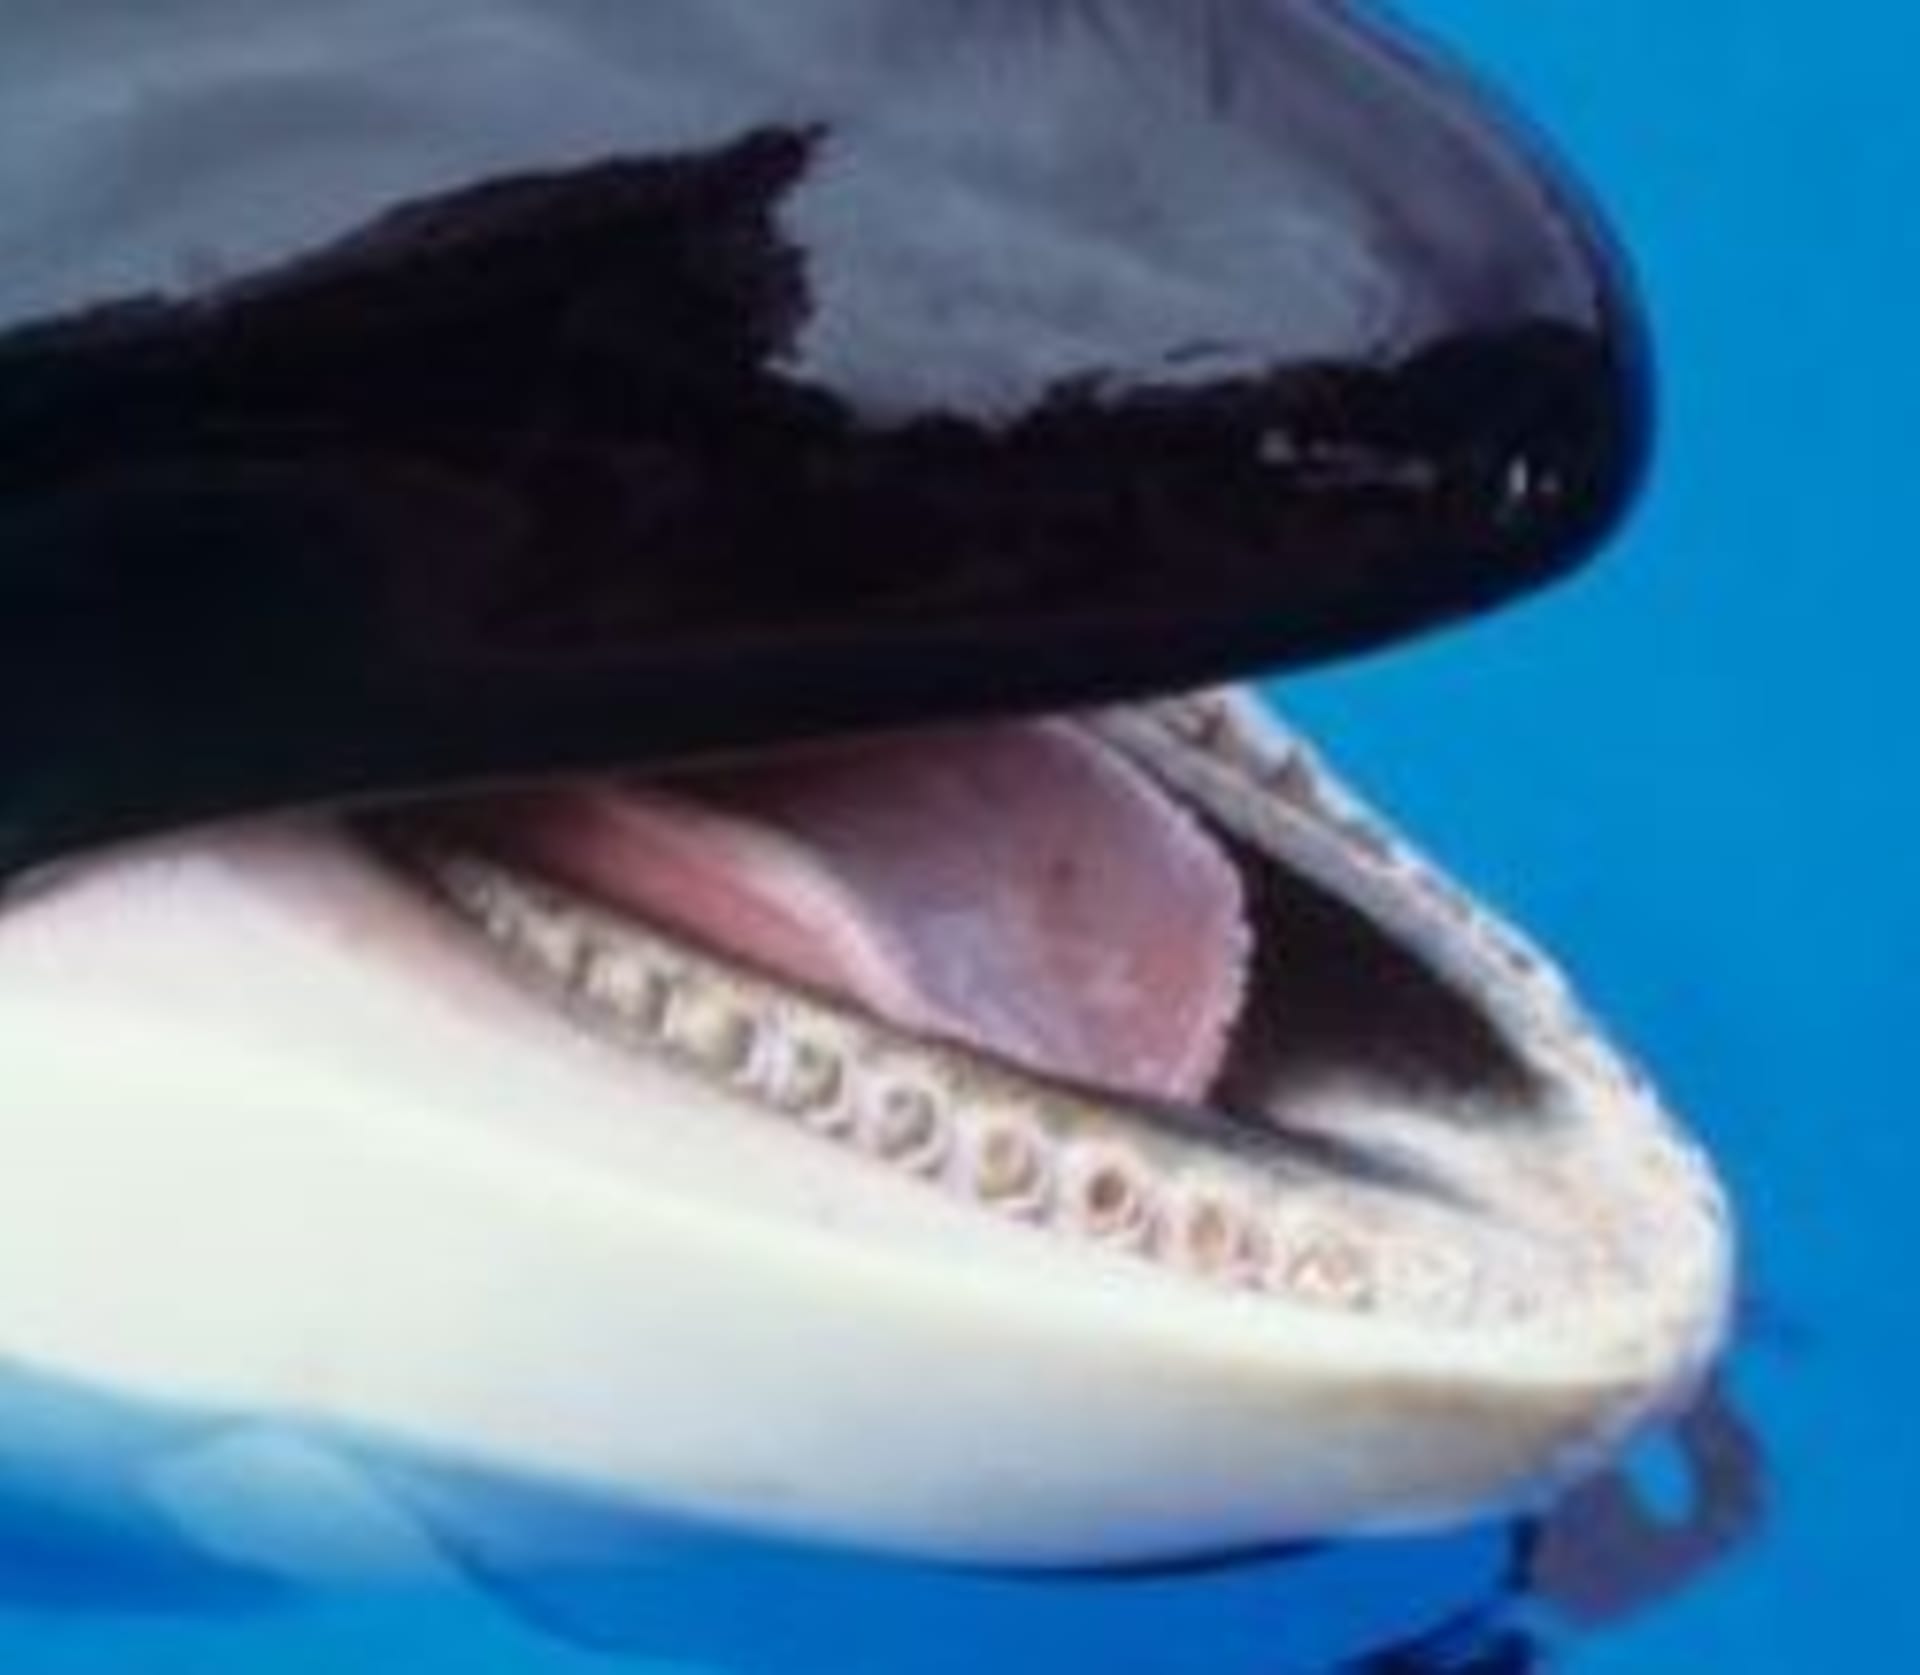 Zábavní parky SeaWorld jsou již dlouhou dobu v hledáčku ochránců zvířat kvůli nedostatečné péči.